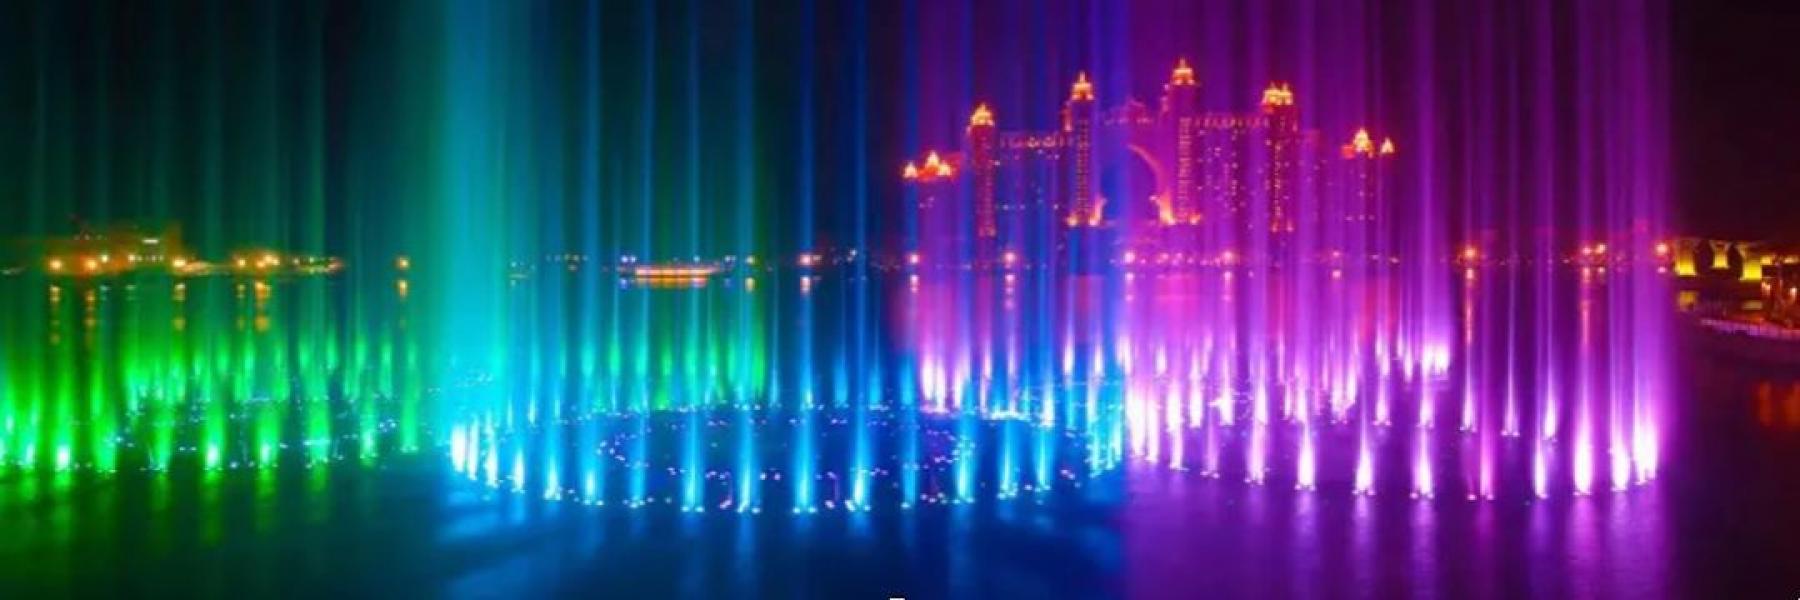  دبي تحتفل بمهرجان الأضواء " ديوالي" بفعاليات ترفيهية وعروض ترويجية متنوعة